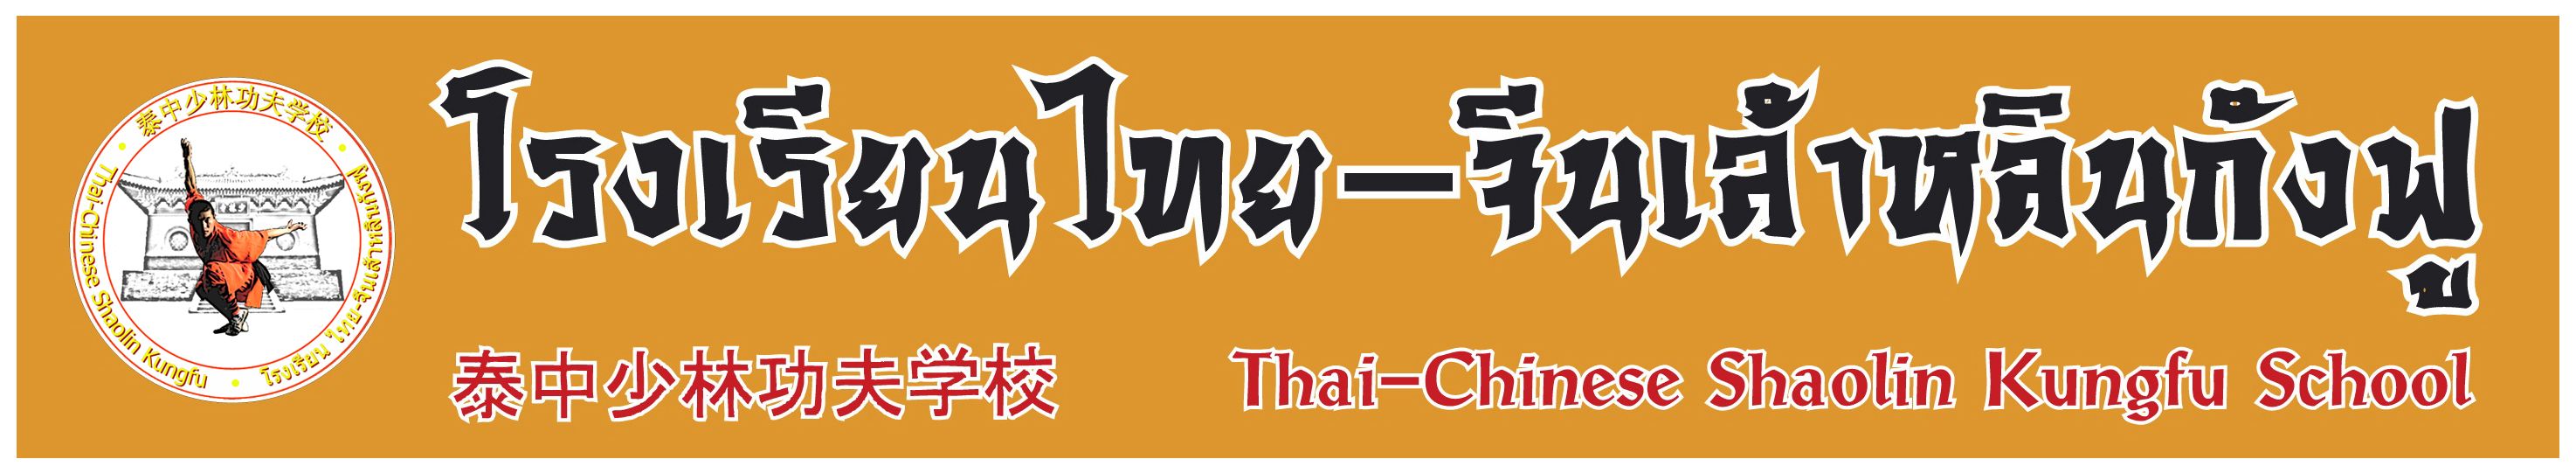 Thai-Chinese Shaolin Kungfu School  ç¹-չԹѧ  泰中少林功夫学校